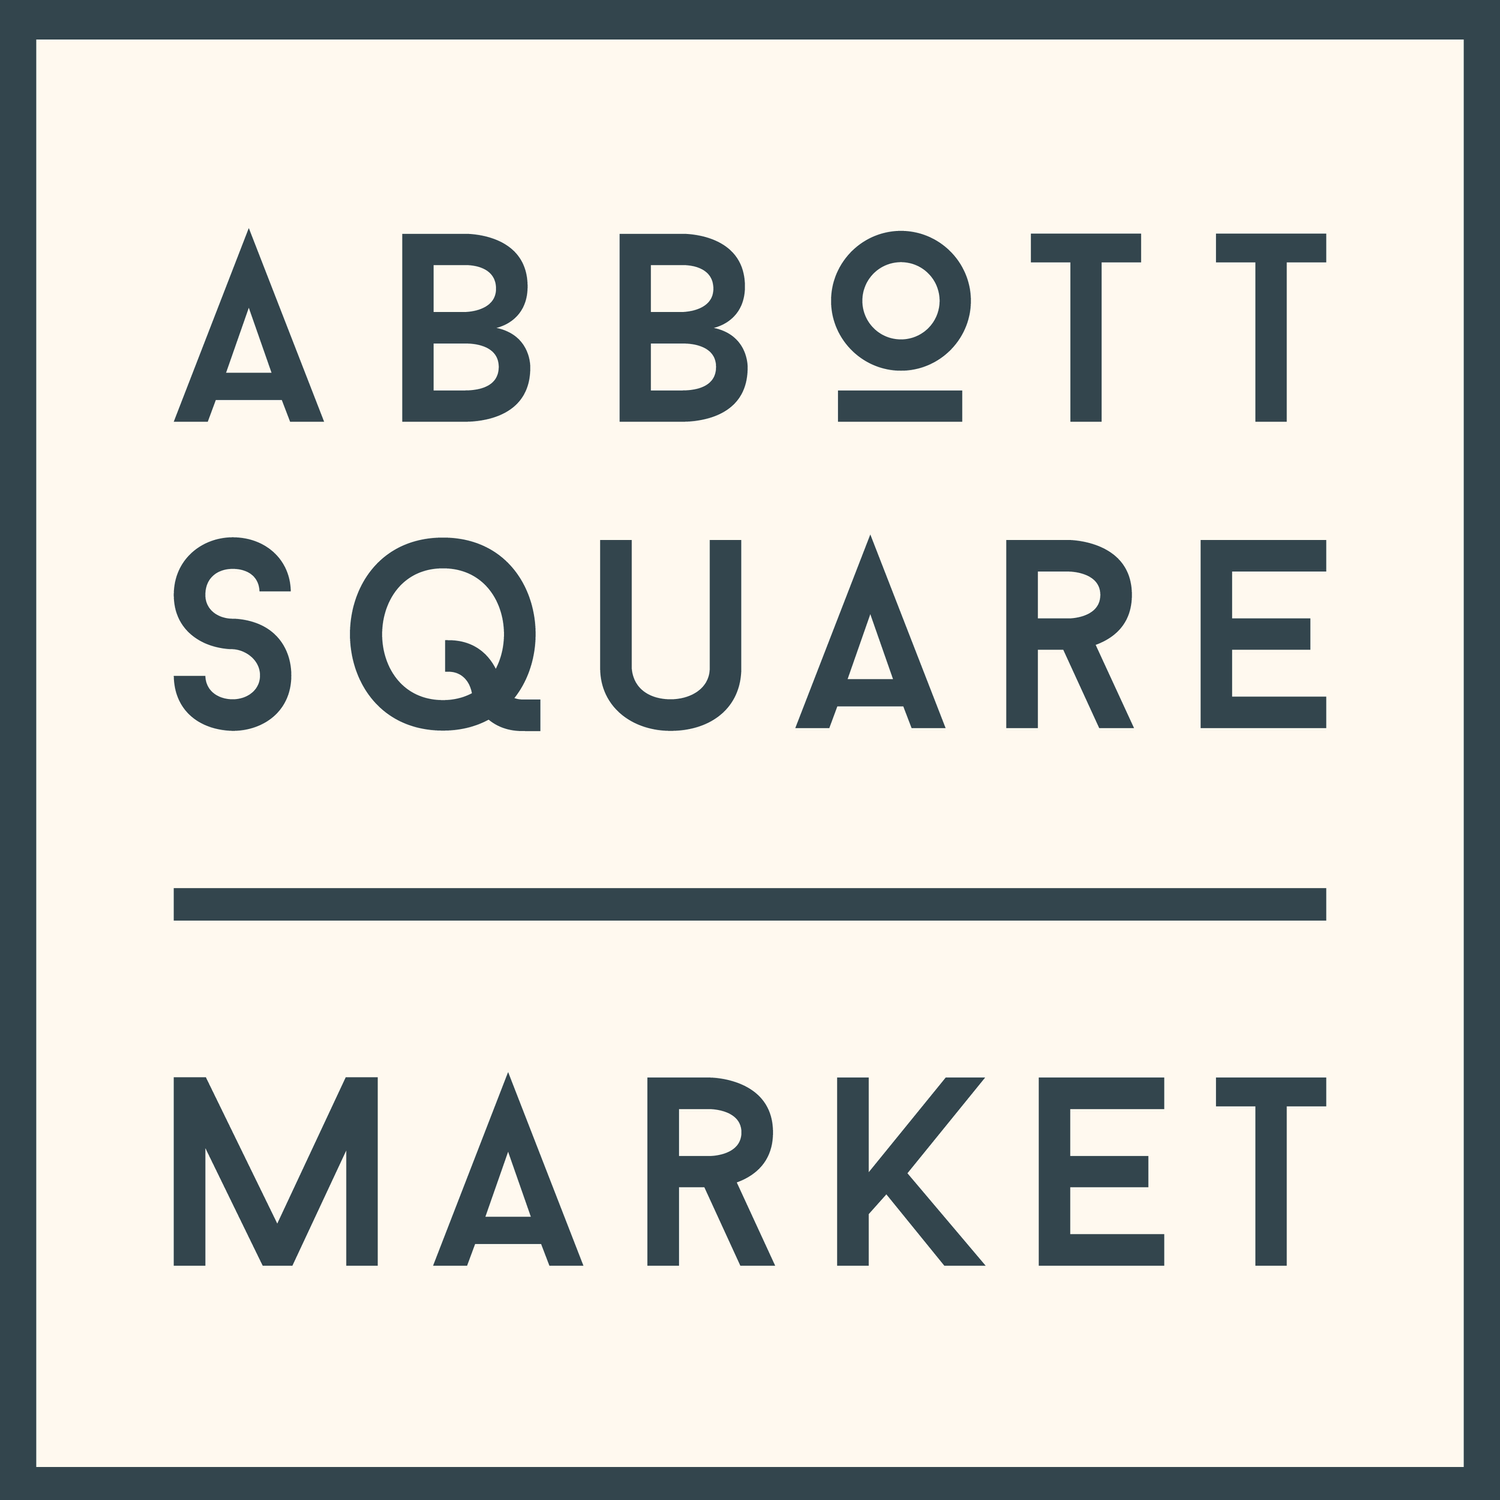 Abbott Square Market